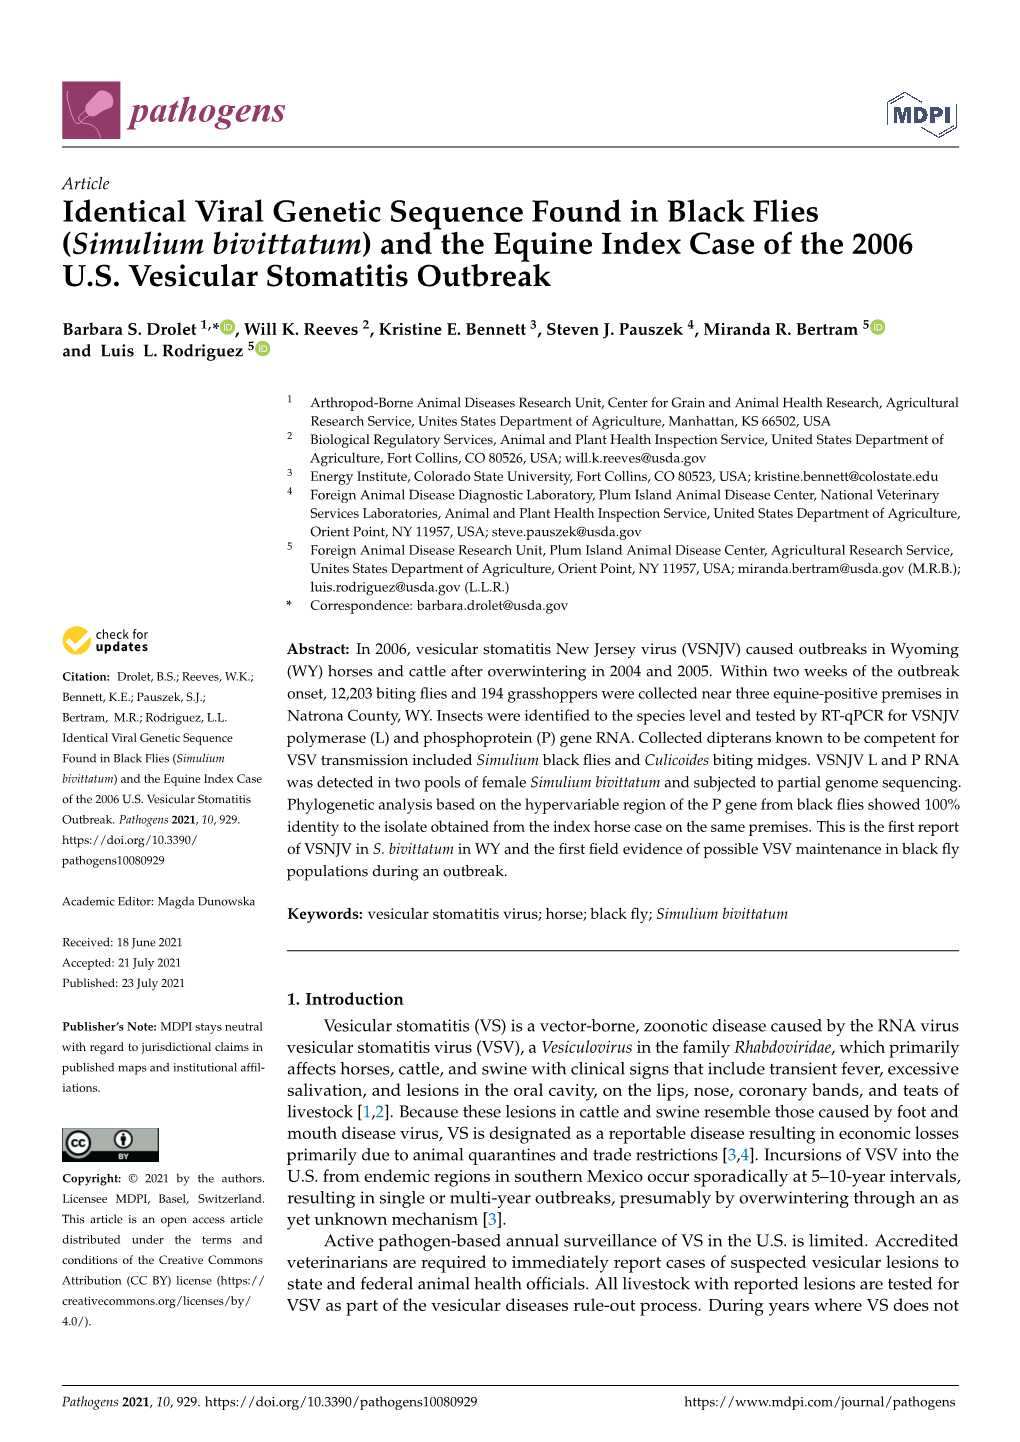 (Simulium Bivittatum) and the Equine Index Case of the 2006 US Vesicular